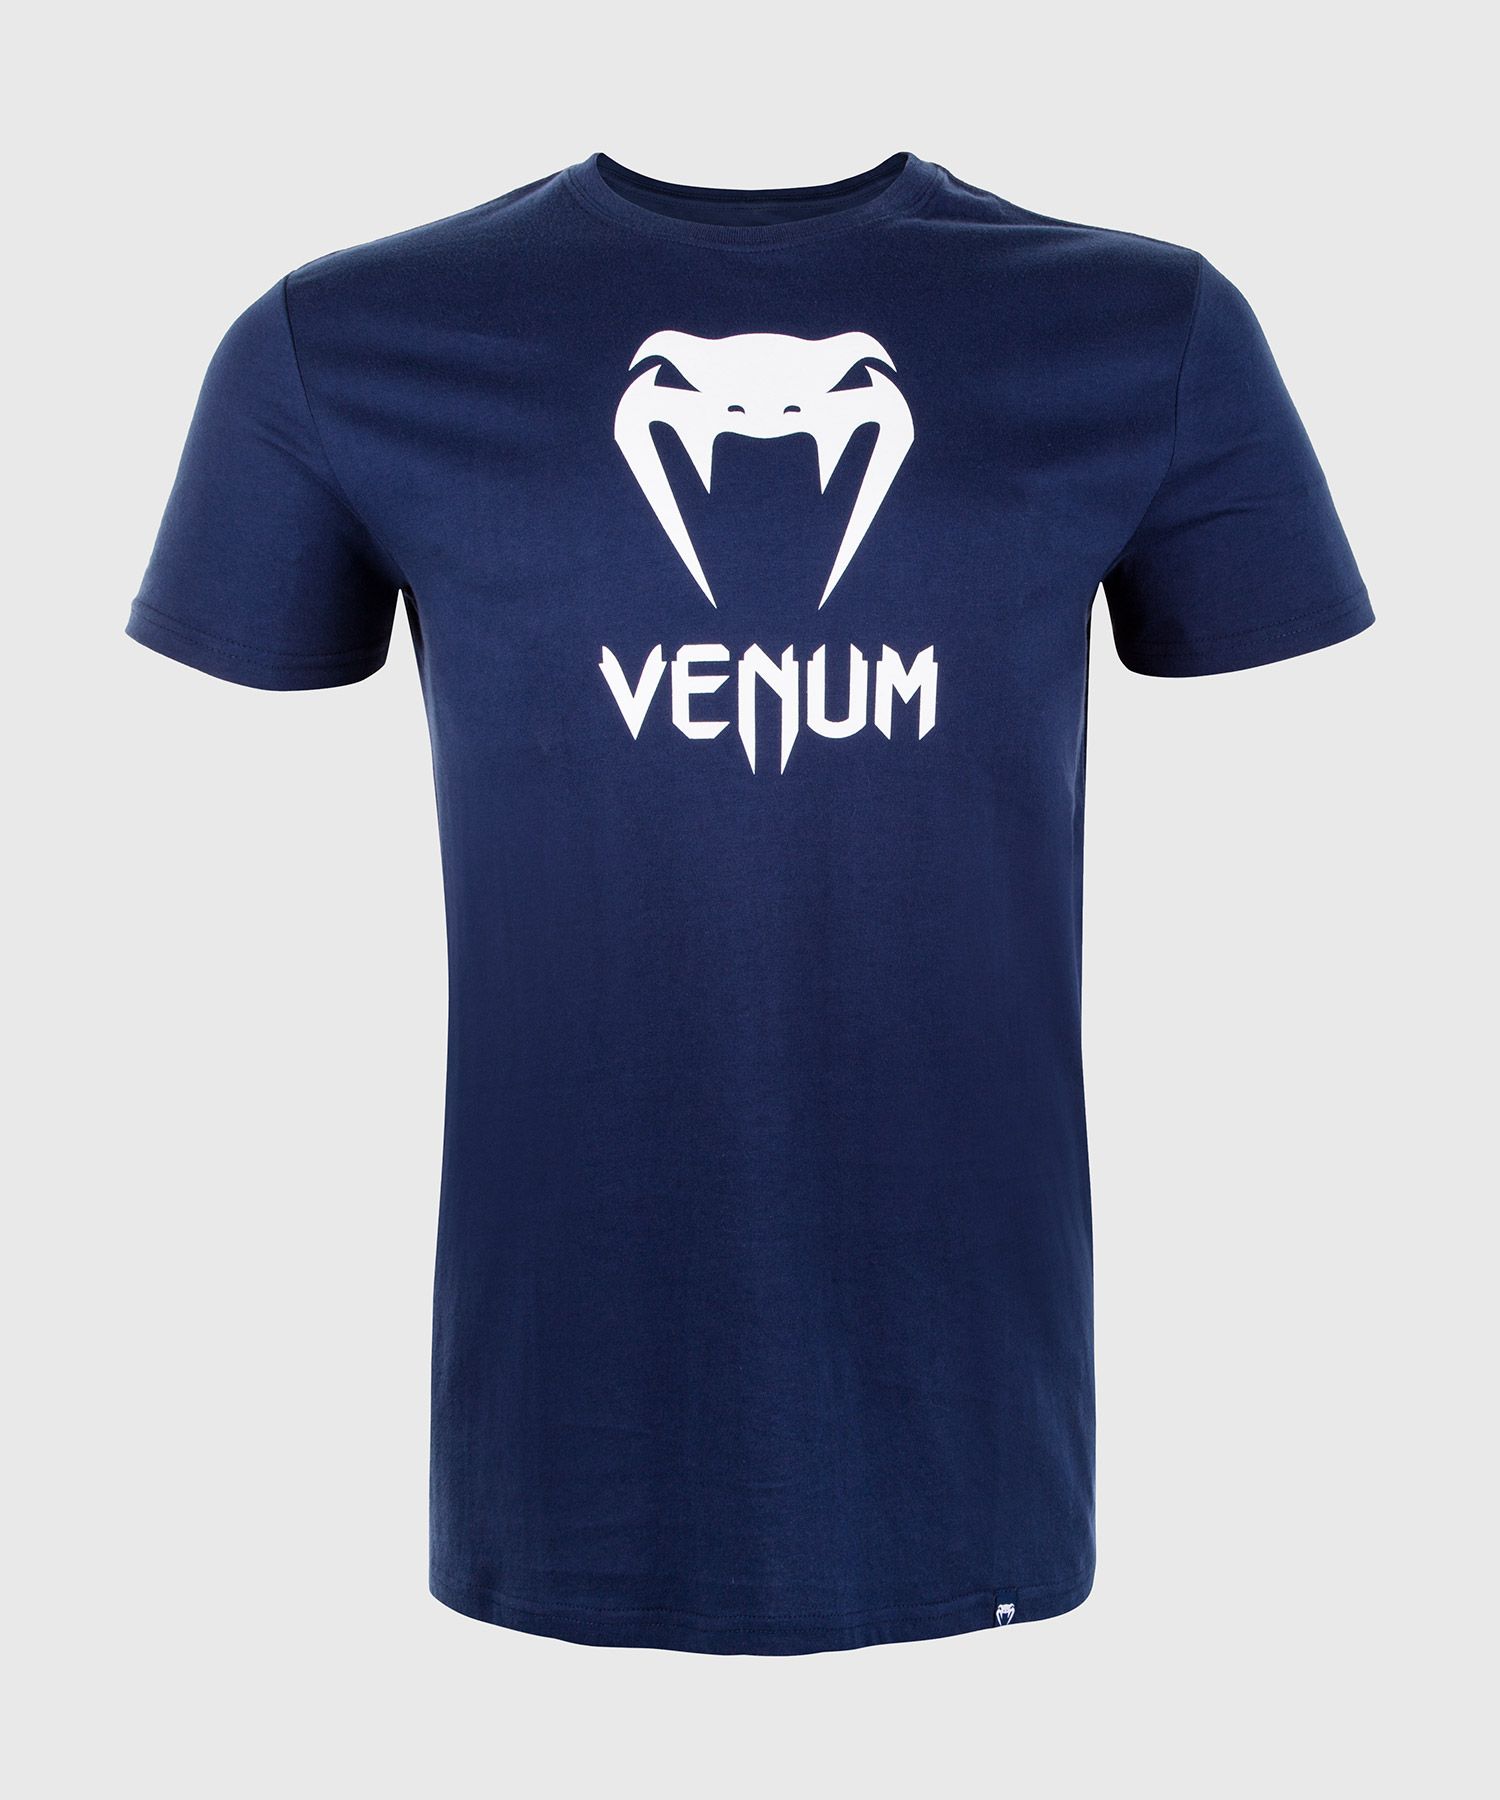 Venum Classic T-Shirt - Marineblau